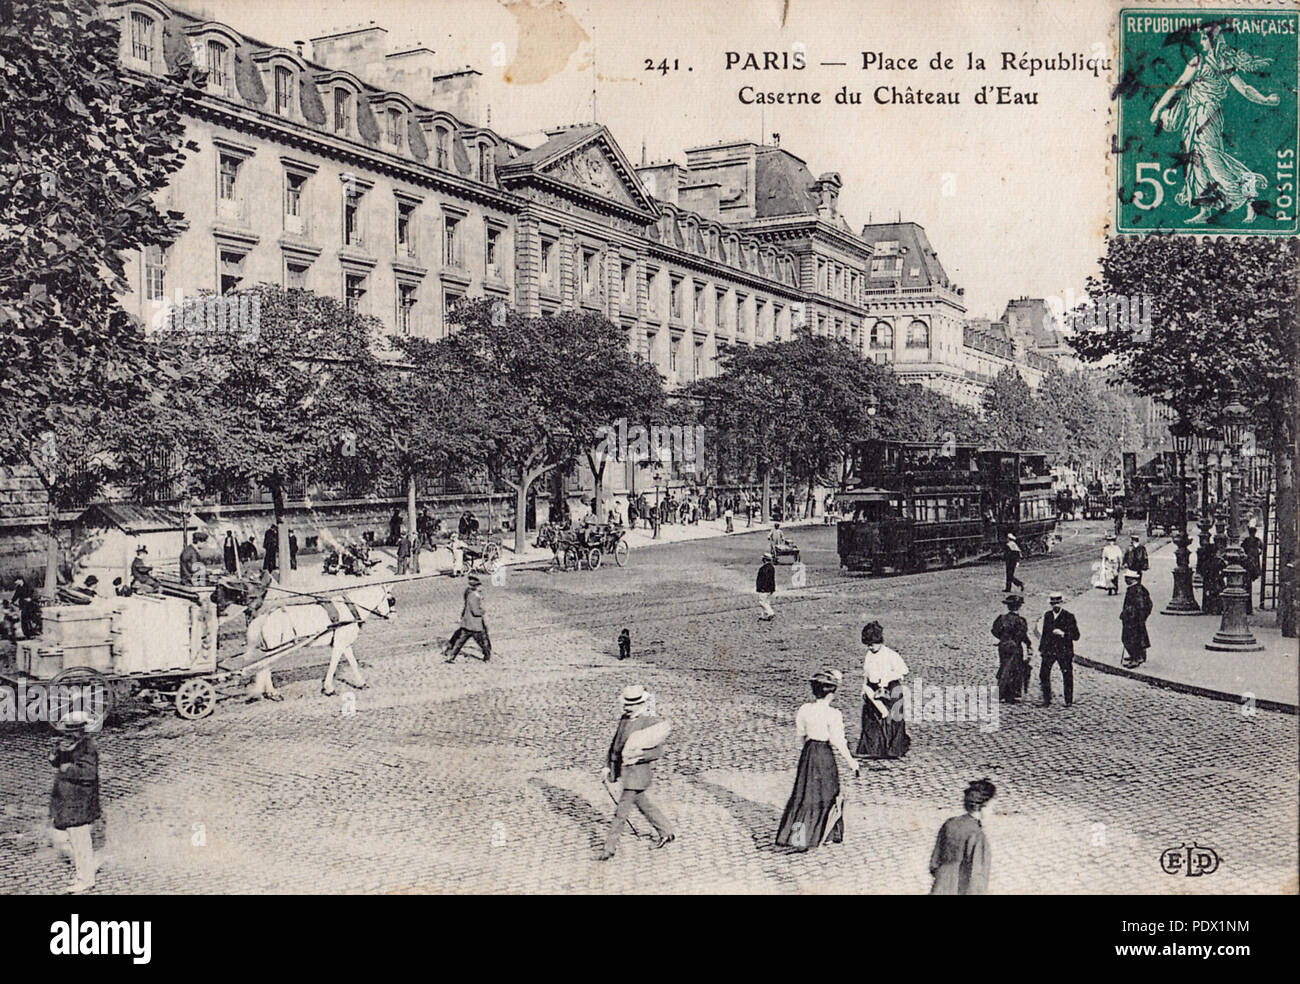 121 ELD 241 - PARIS - Place de la République - Caserne du Chateau-d'Eau Stock Photo